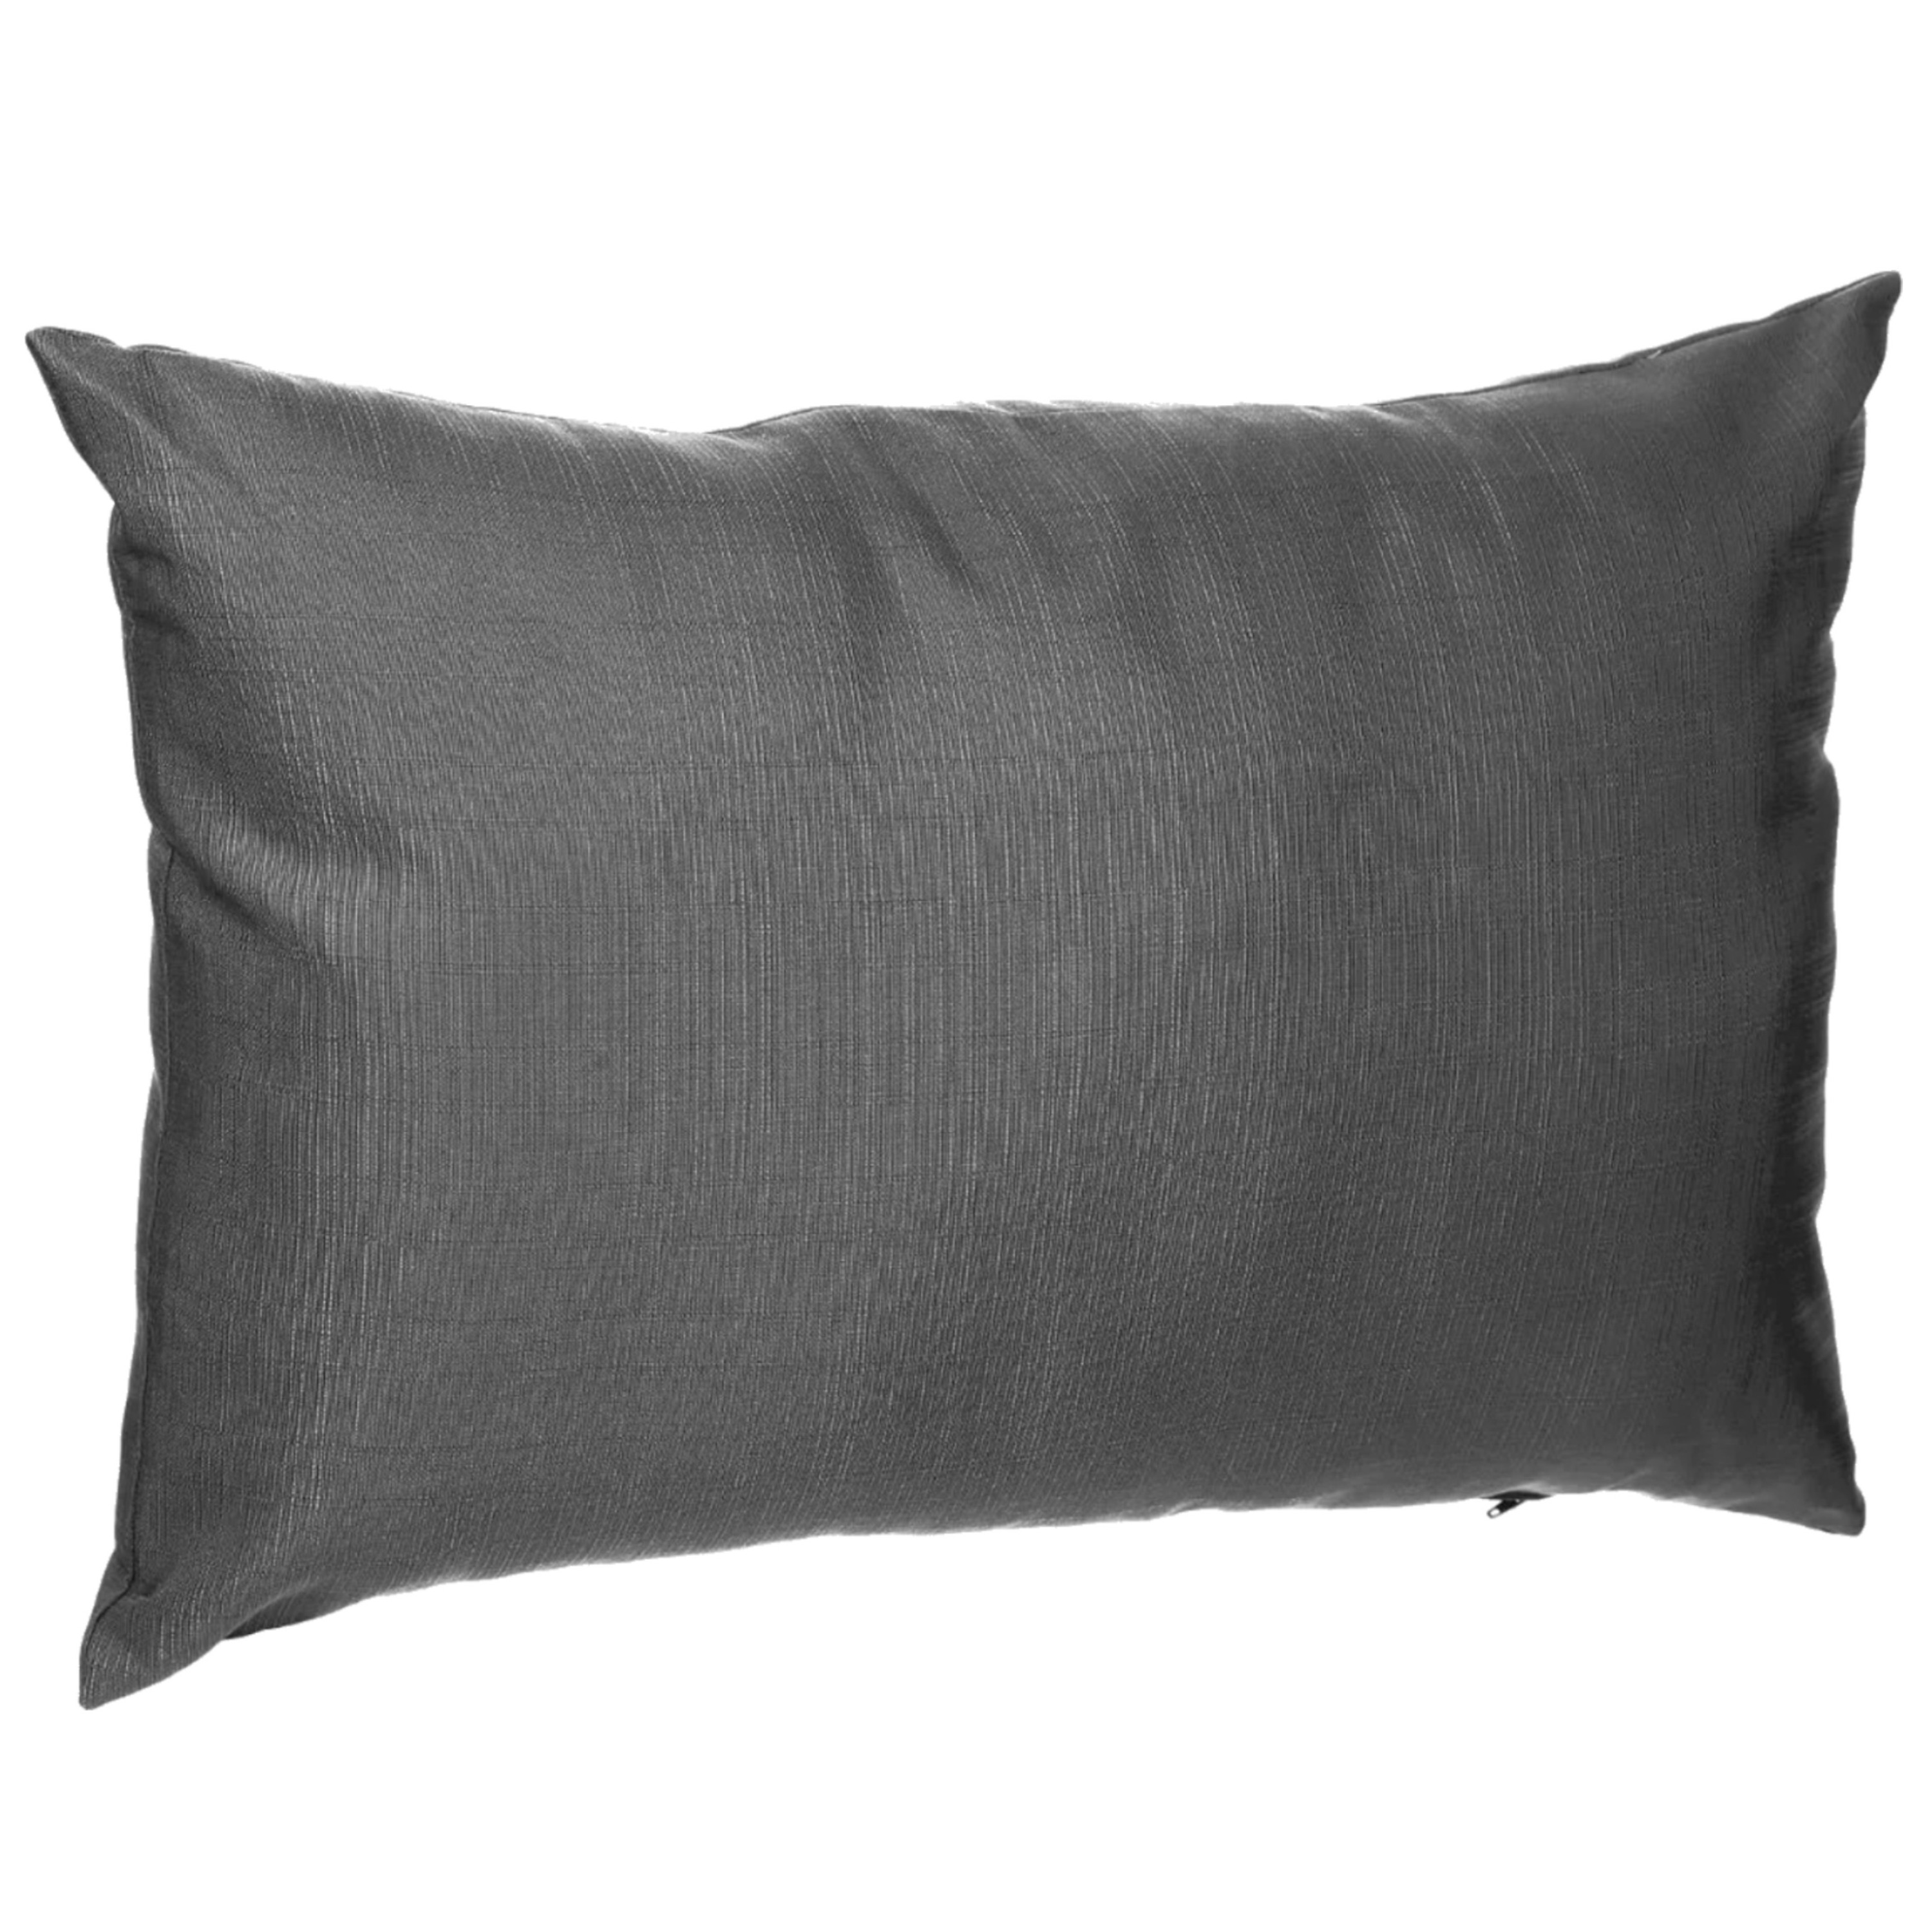 Bank-sier-tuin kussens voor binnen en buiten in de kleur antraciet grijs 30 x 50 x 10 cm